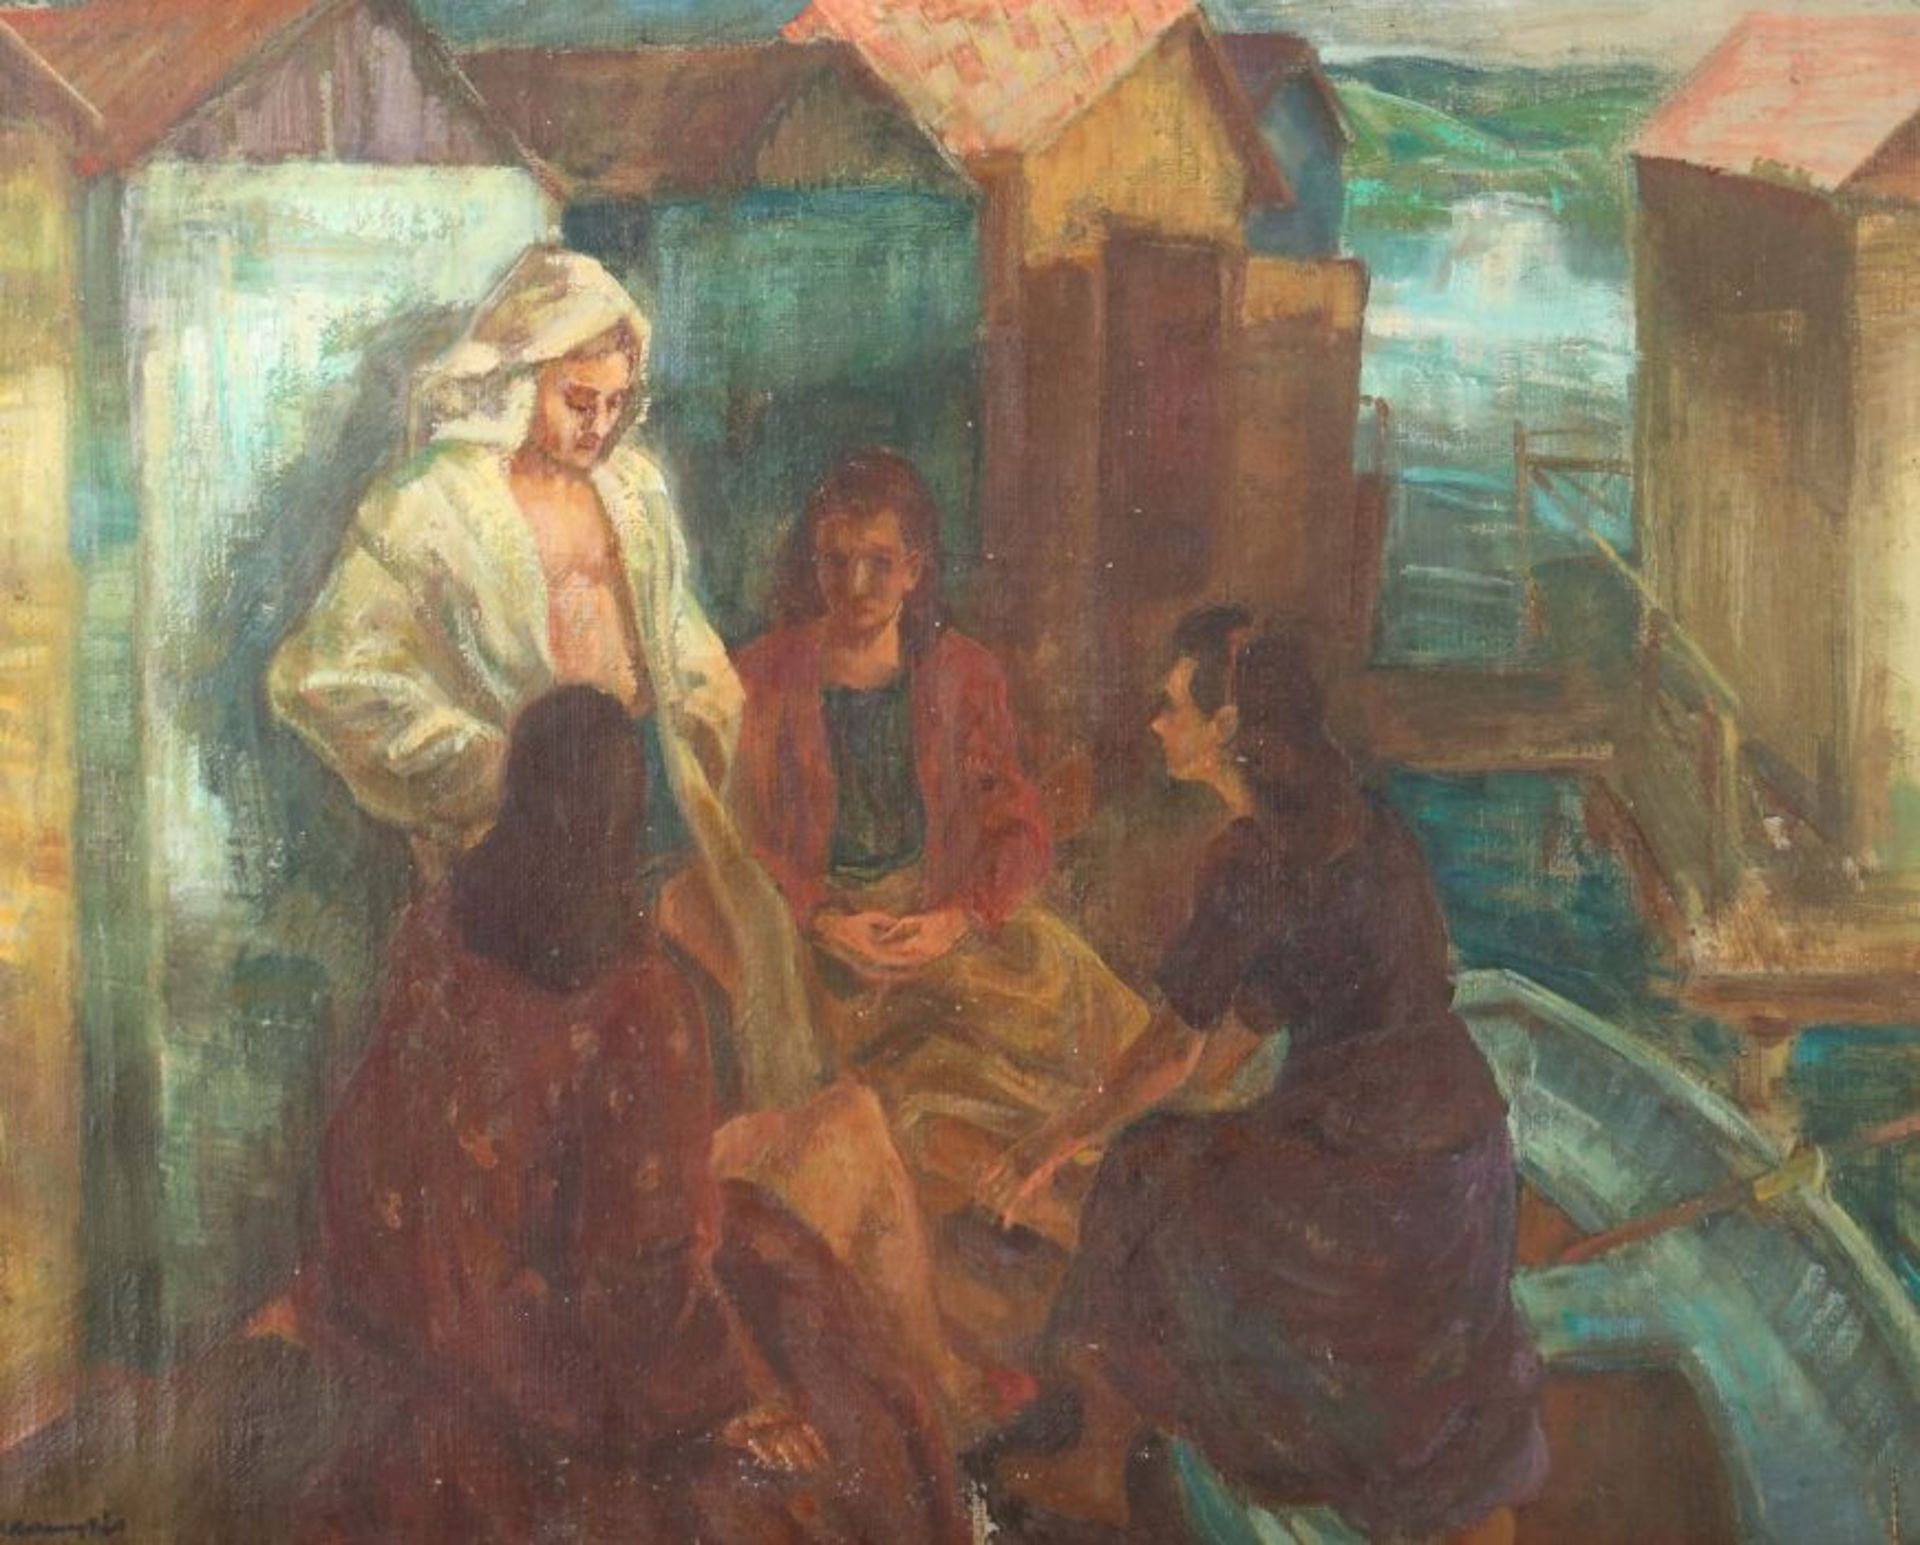 Udvary, Pal Budapest 1900 - 1987 ebenda, ungarischer Maler. "Am Ufer", stilisierte Darstellung mit